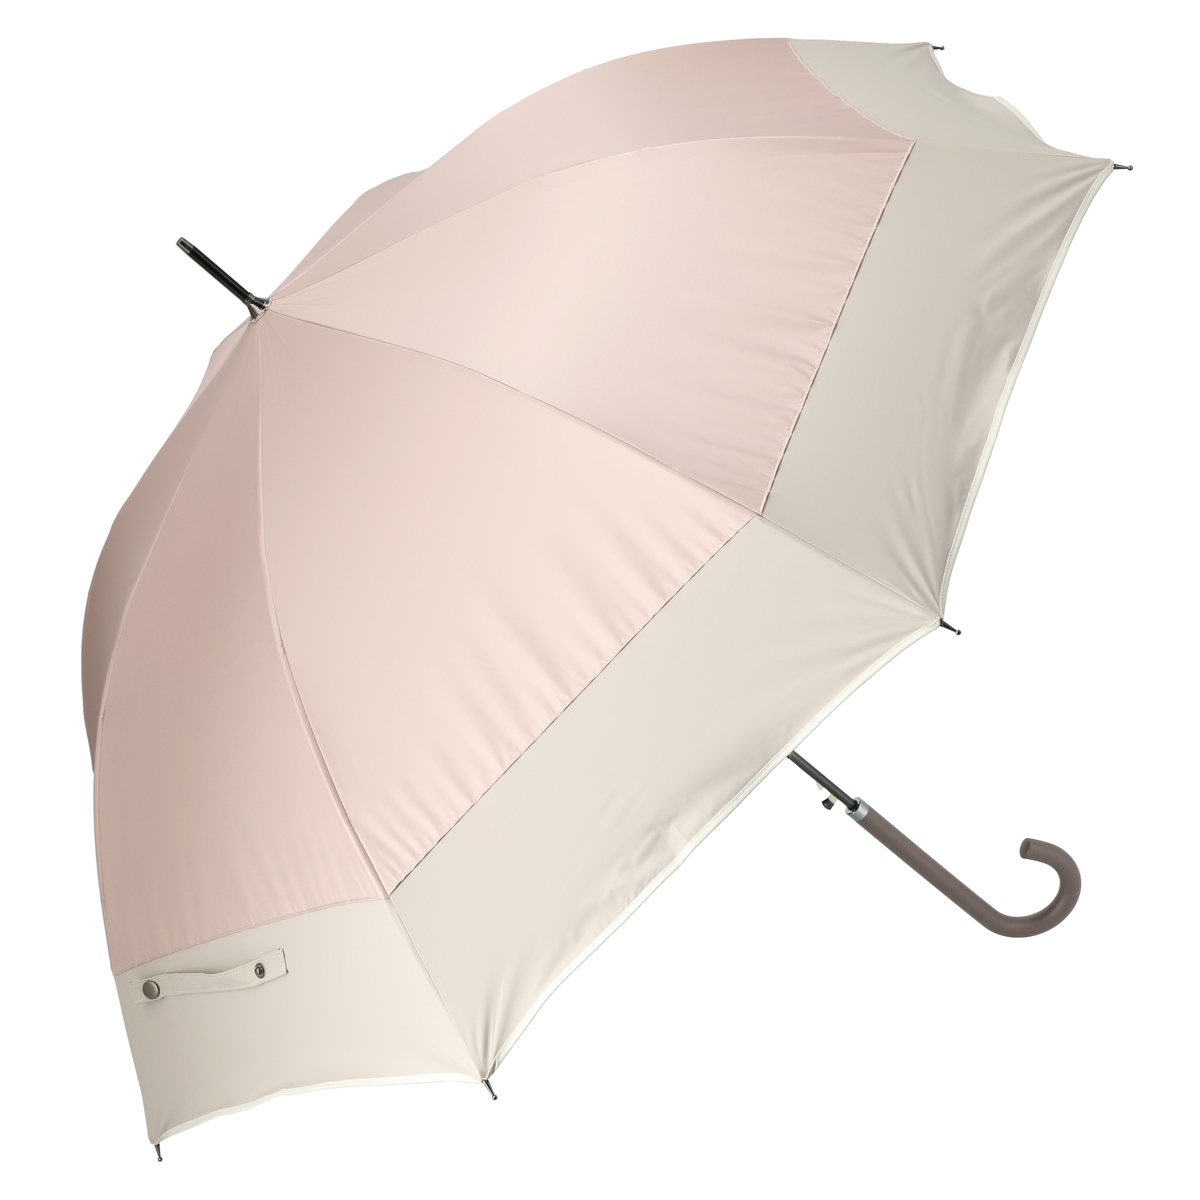  ルナジュメール UV1級遮光+耐風+撥水パイピング長傘  ピンクベージュ